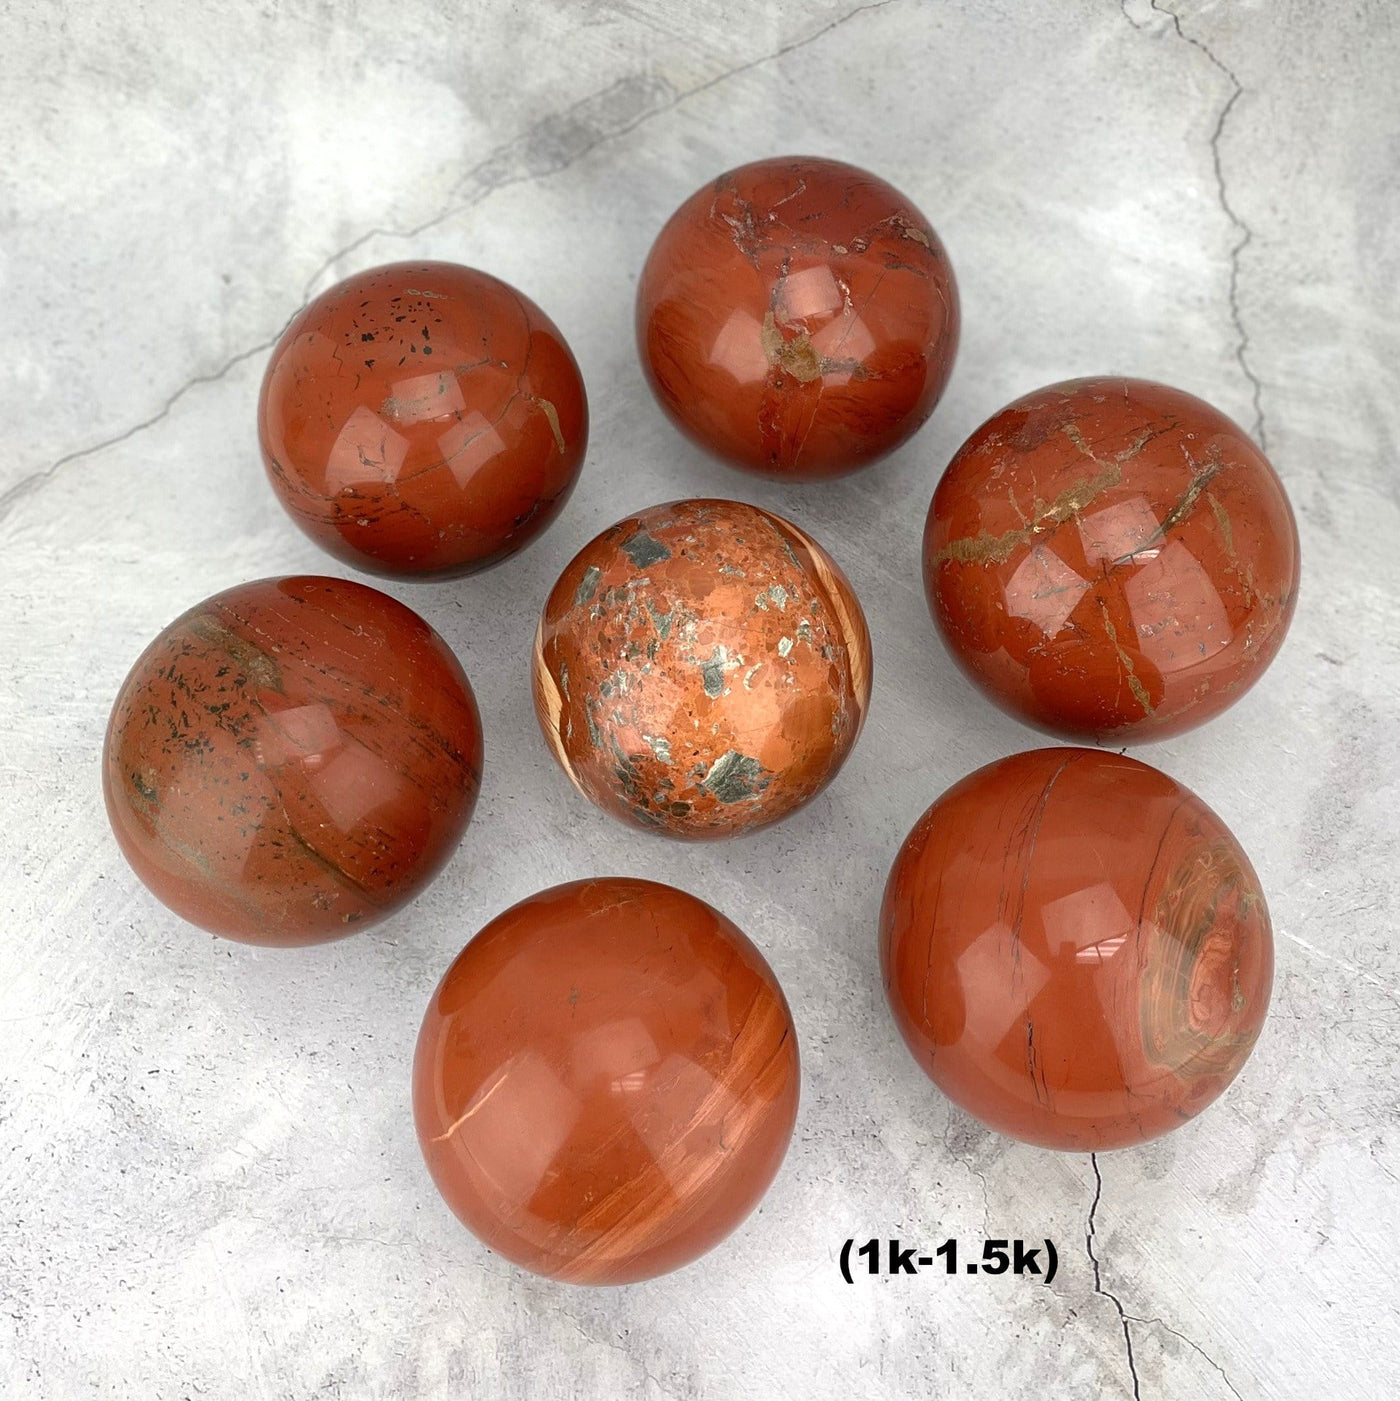 7 1-1.5k Red Jasper Spheres arranged like a flower on gray background